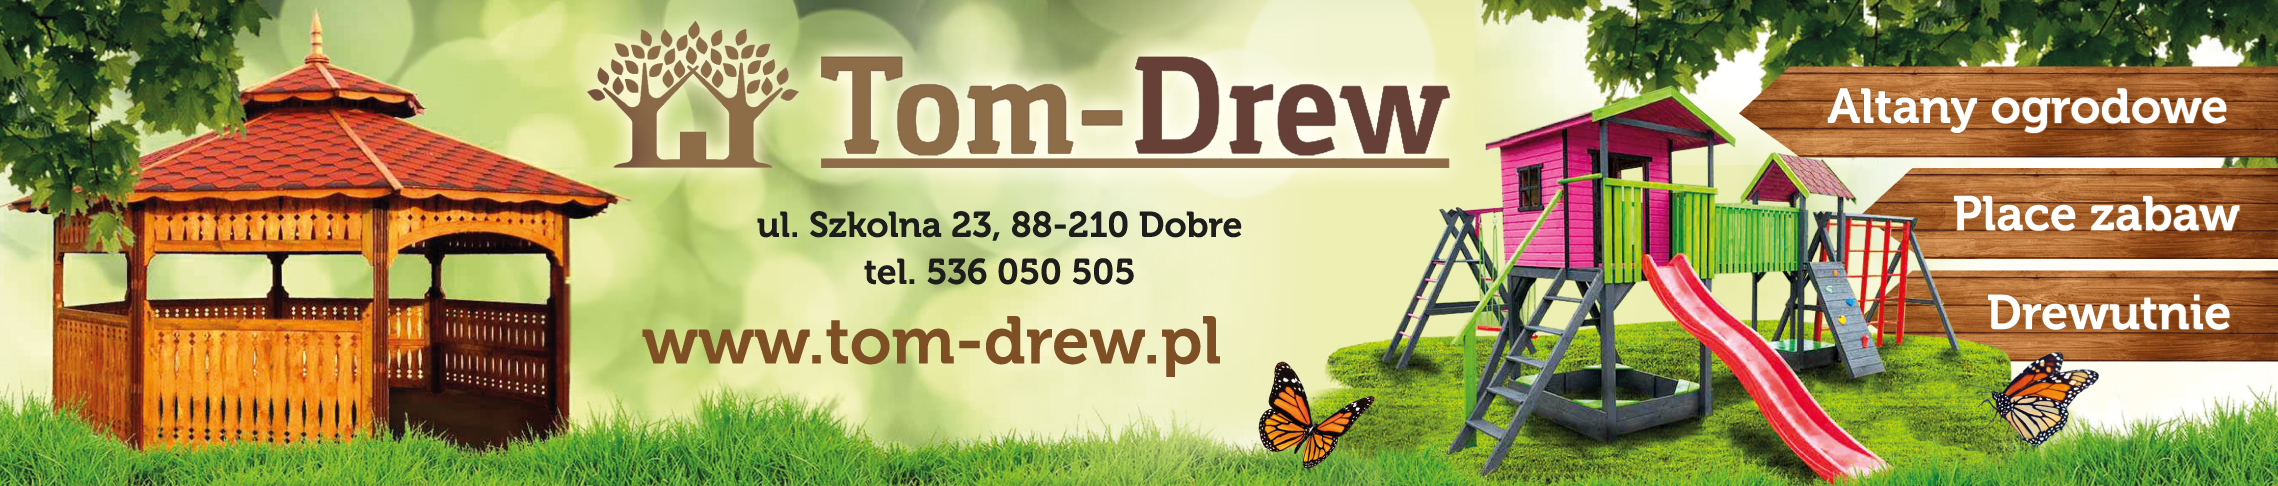 Grupa TOM-DREW Sp. z o.o sp.k. Dobre Altany Ogrodowe / Place Zabaw / Drewutnie